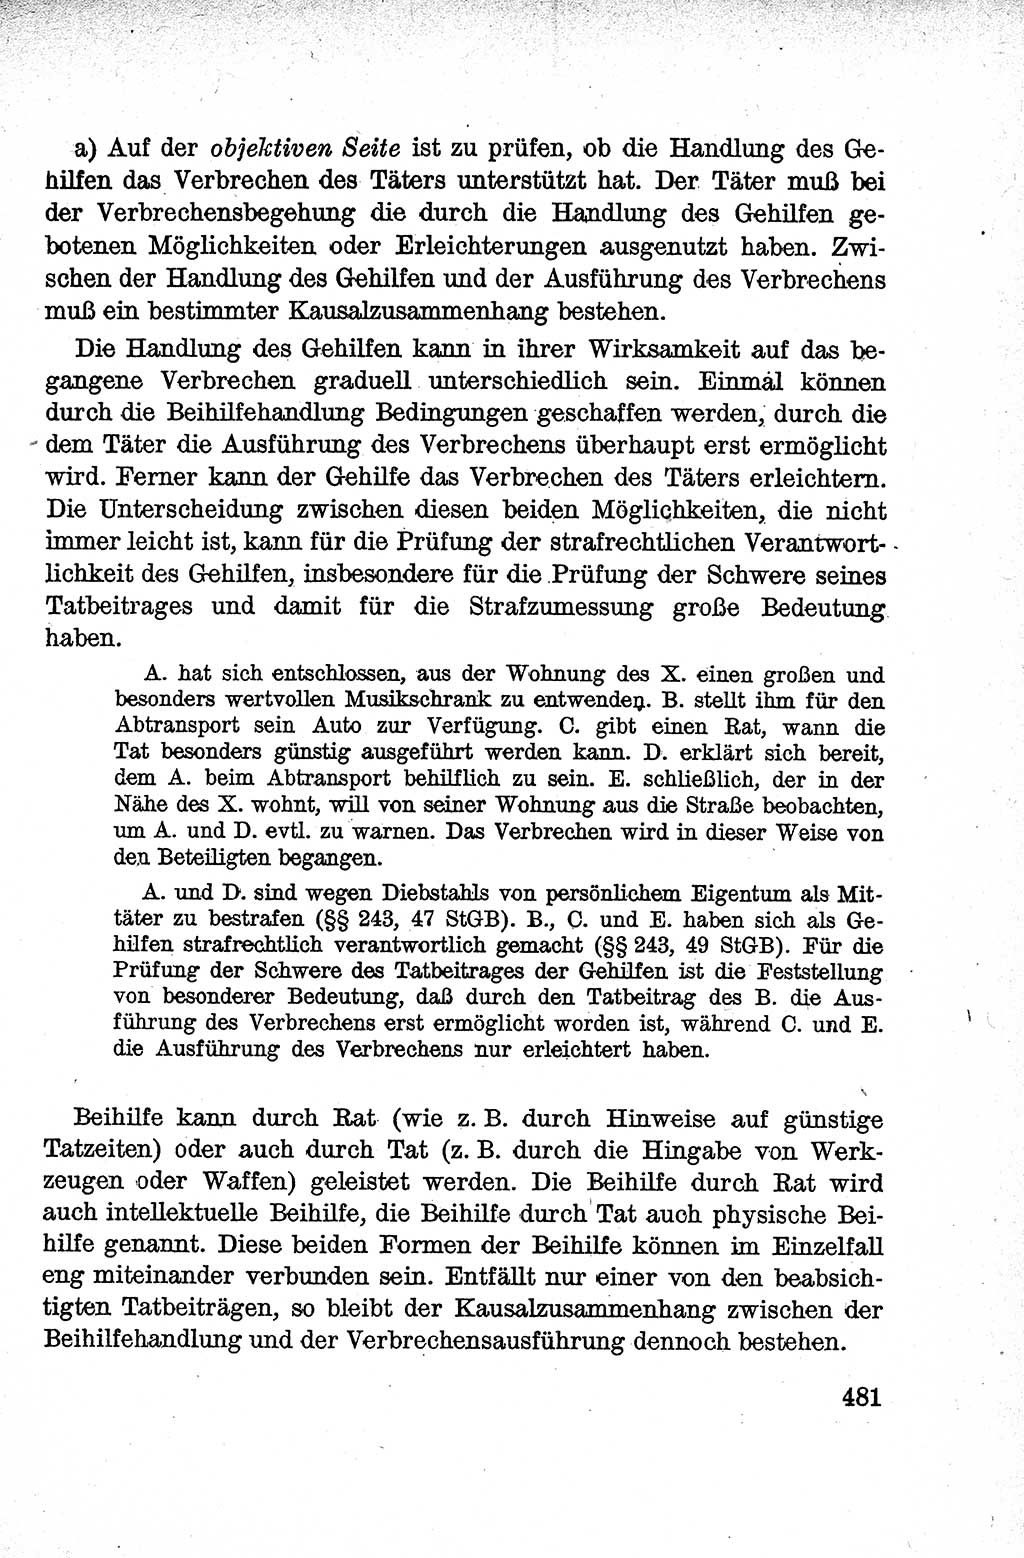 Lehrbuch des Strafrechts der Deutschen Demokratischen Republik (DDR), Allgemeiner Teil 1959, Seite 481 (Lb. Strafr. DDR AT 1959, S. 481)